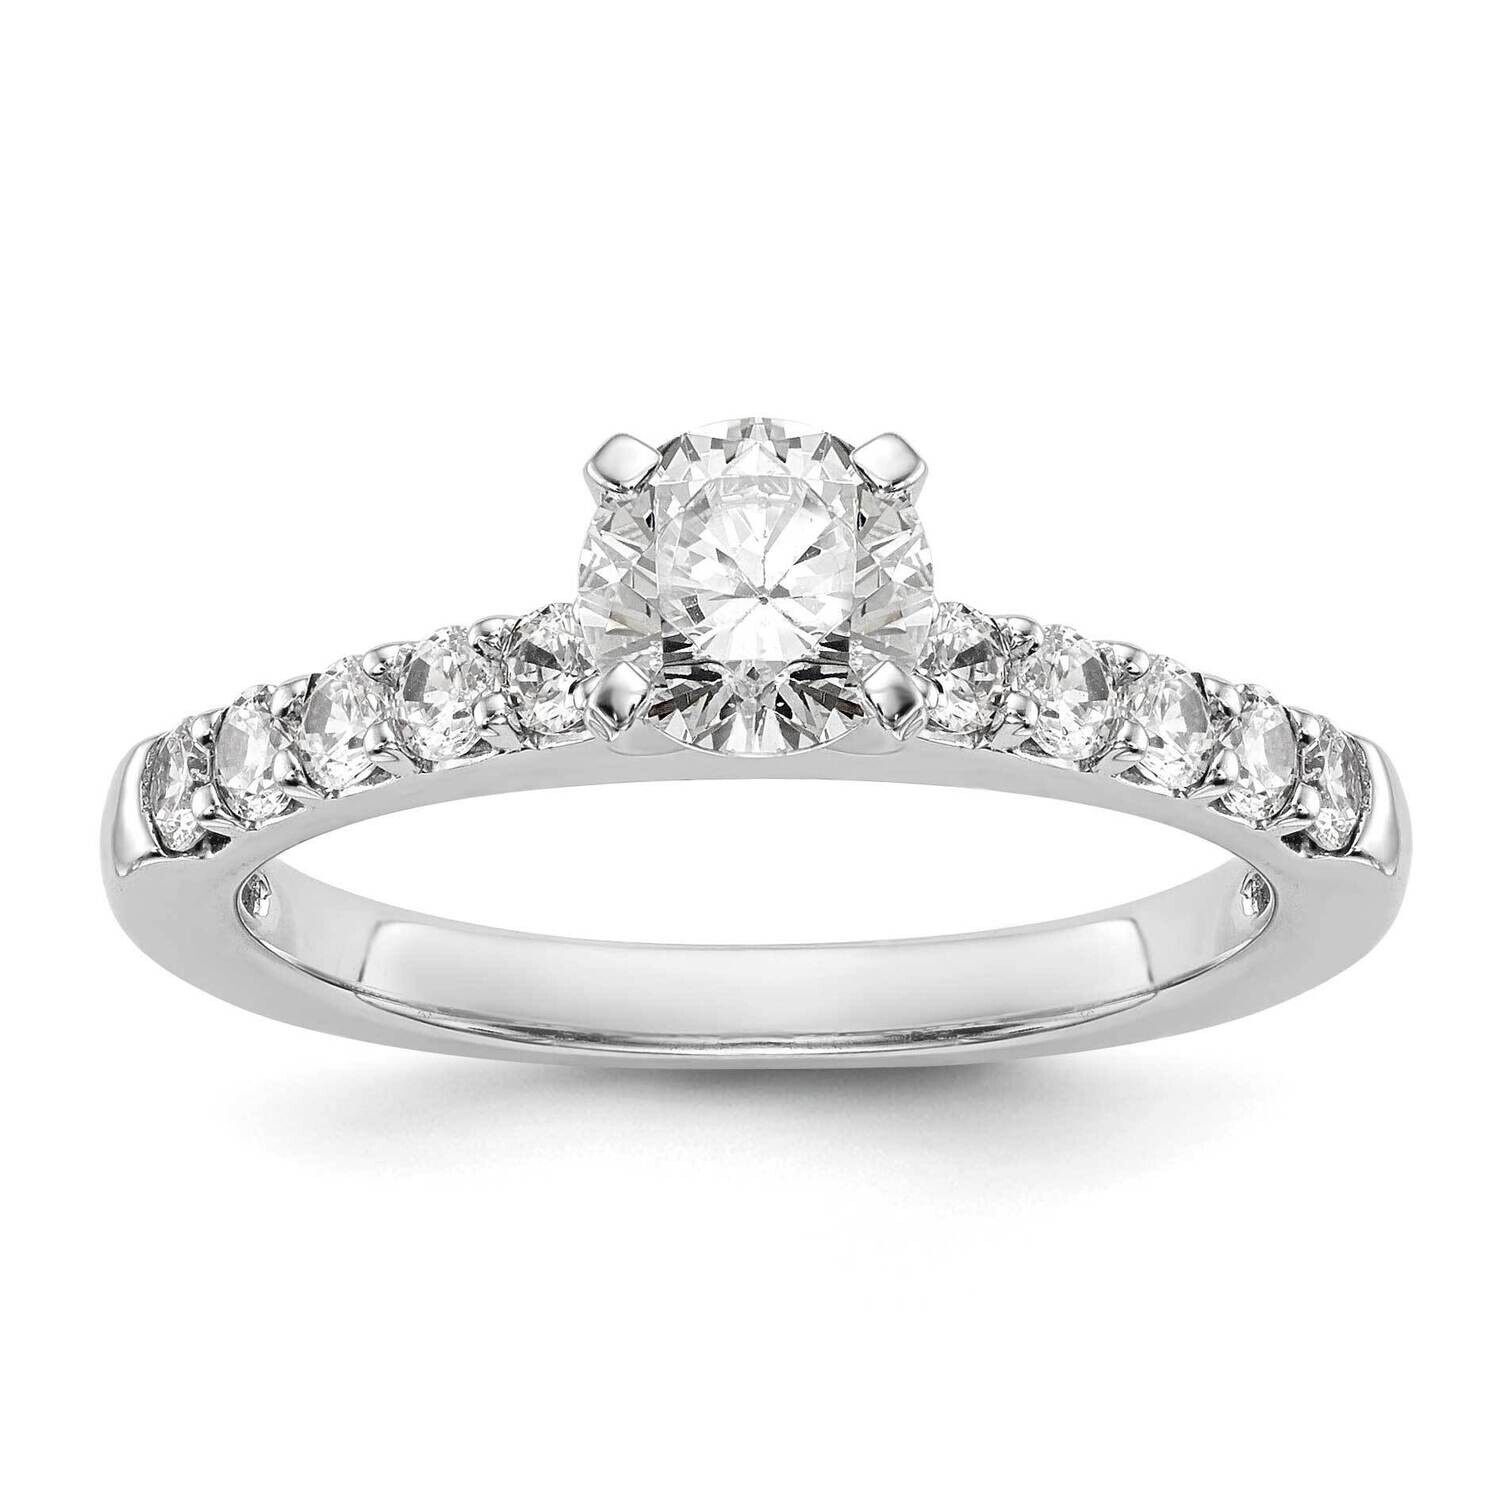 Peg Set 1/2 Carat Diamond Semi-Mount Engagement Ring 14k White Gold RM2928E-045-WAA